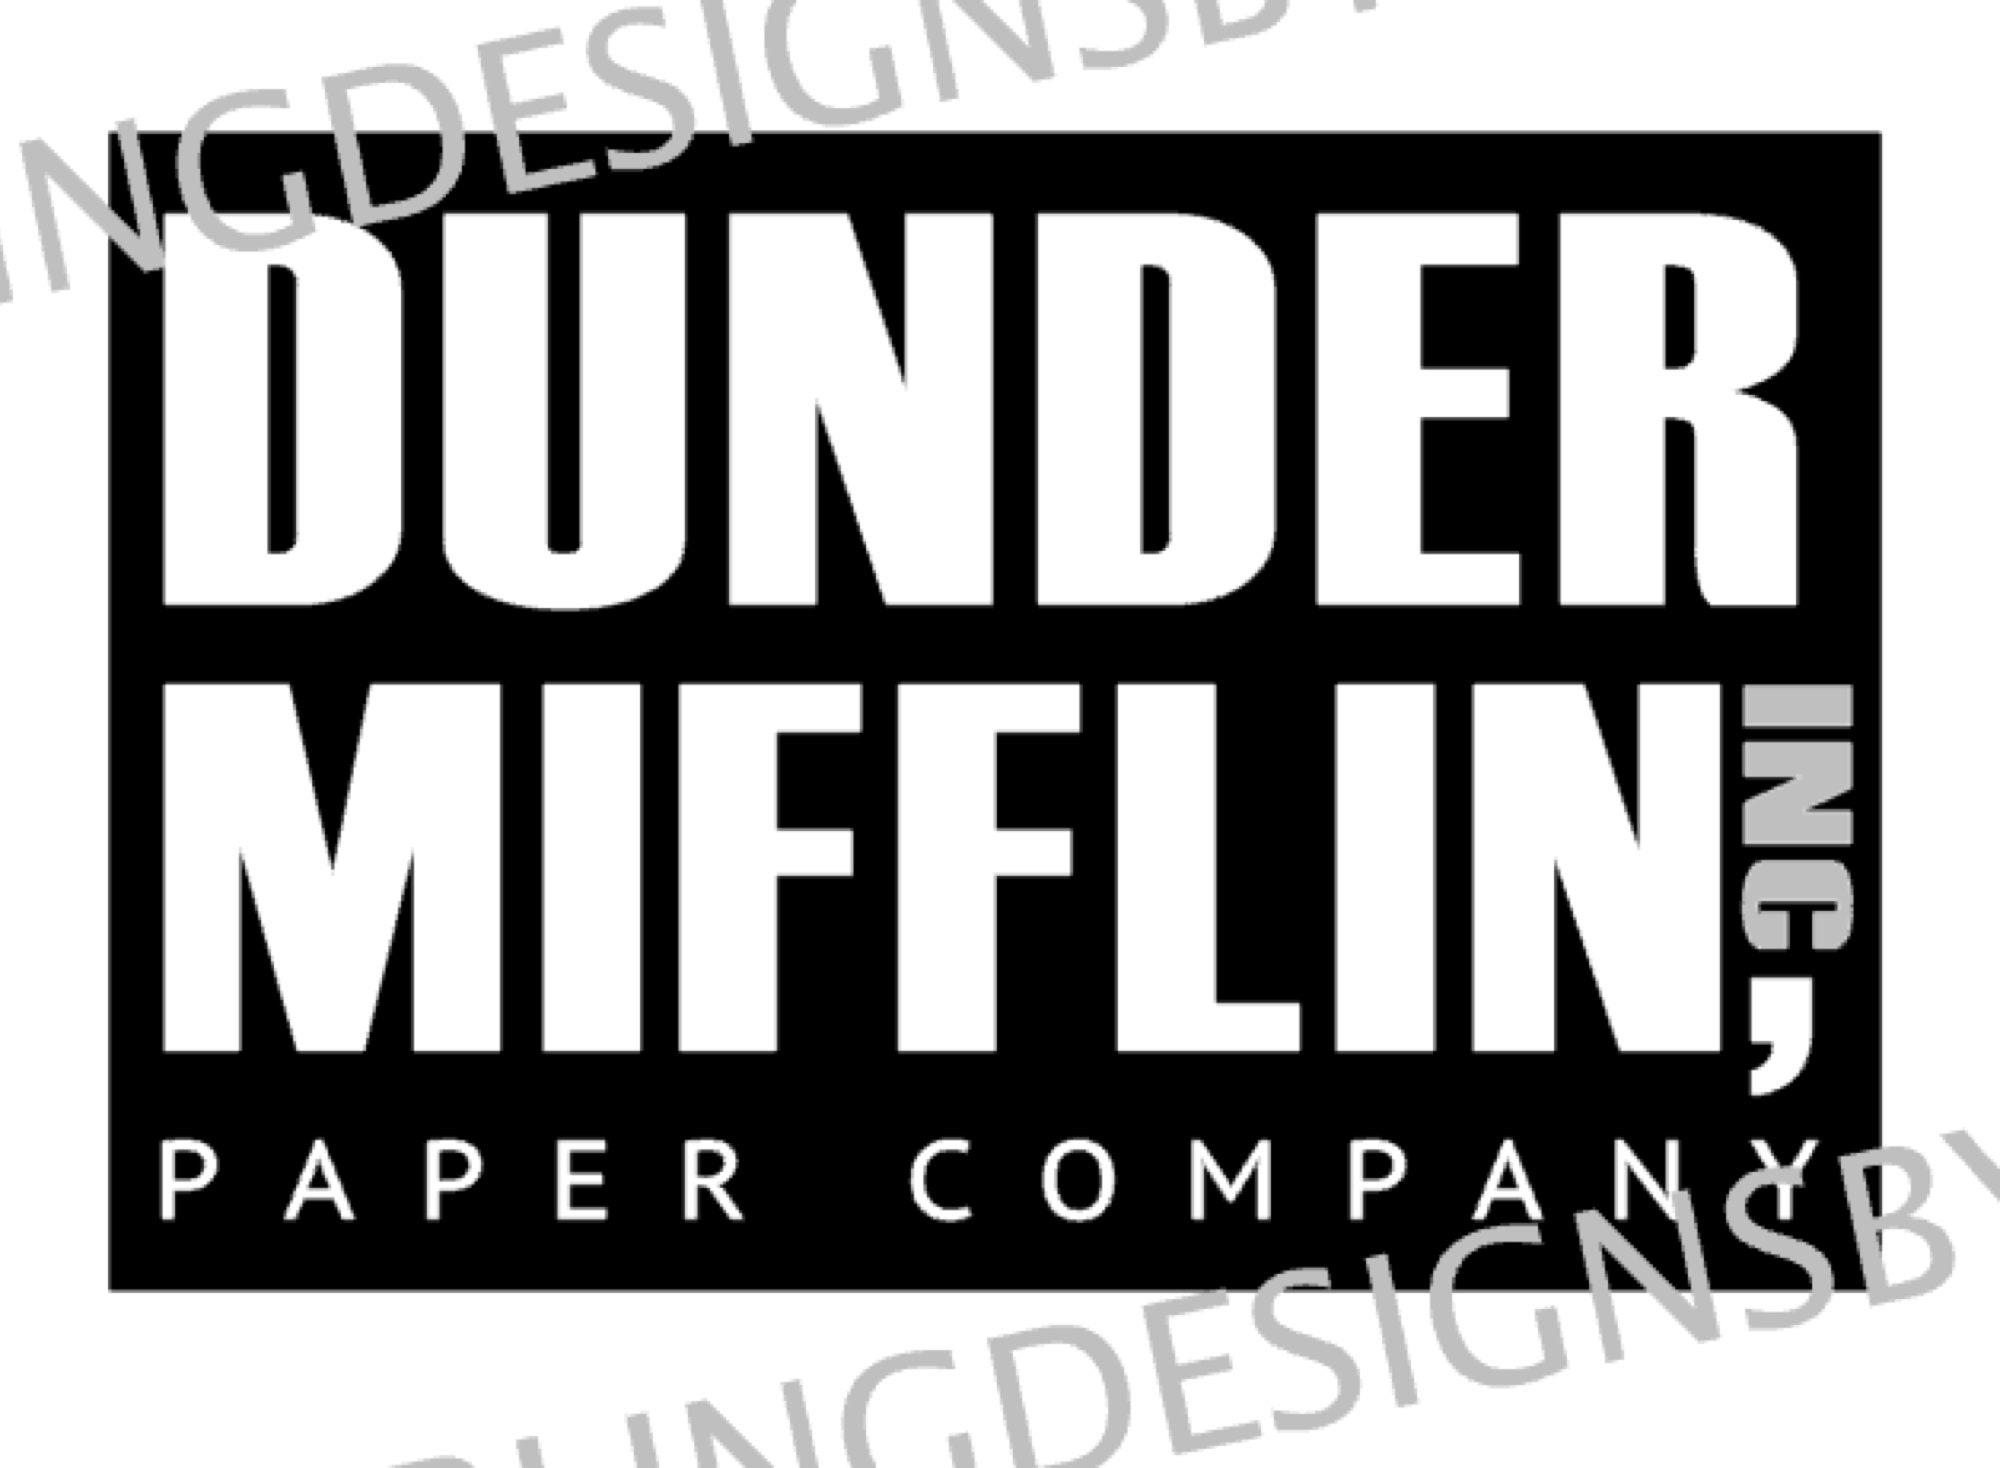 Paper Logo Brand PNG, Clipart, Box Paper, Brand, Dunder Mifflin